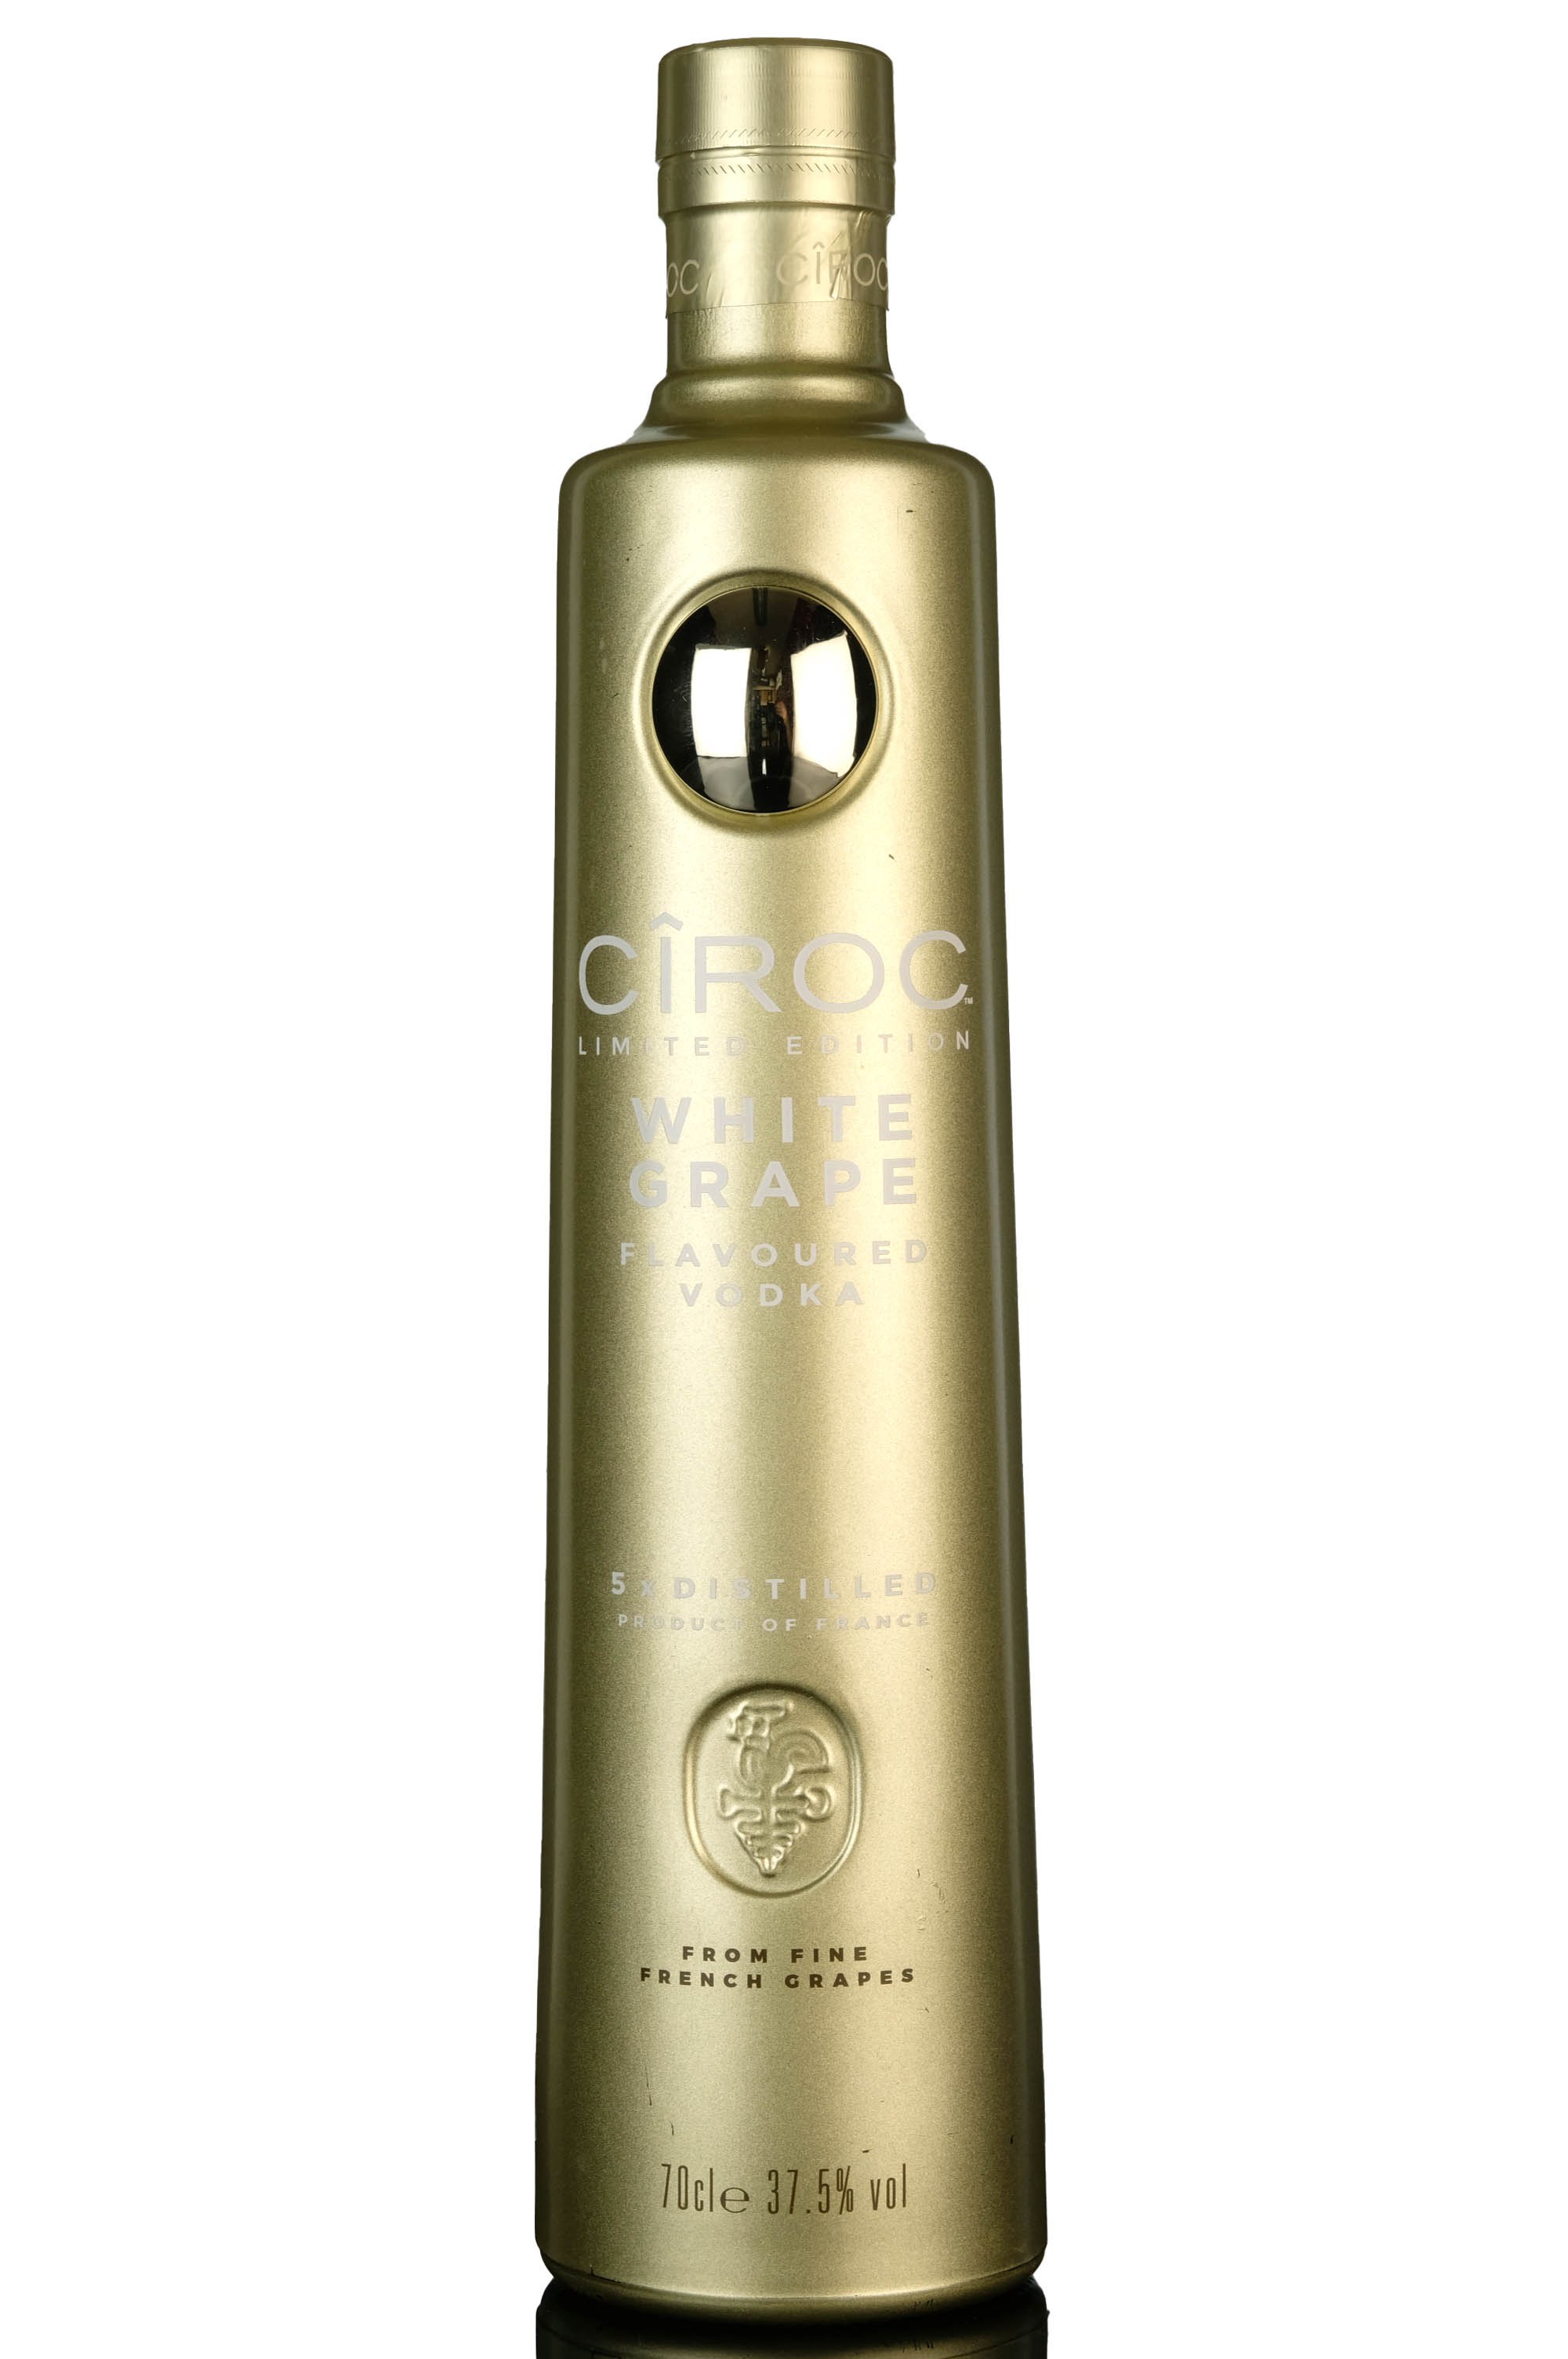 Ciroc Vodka - White Grapes Limited Edition